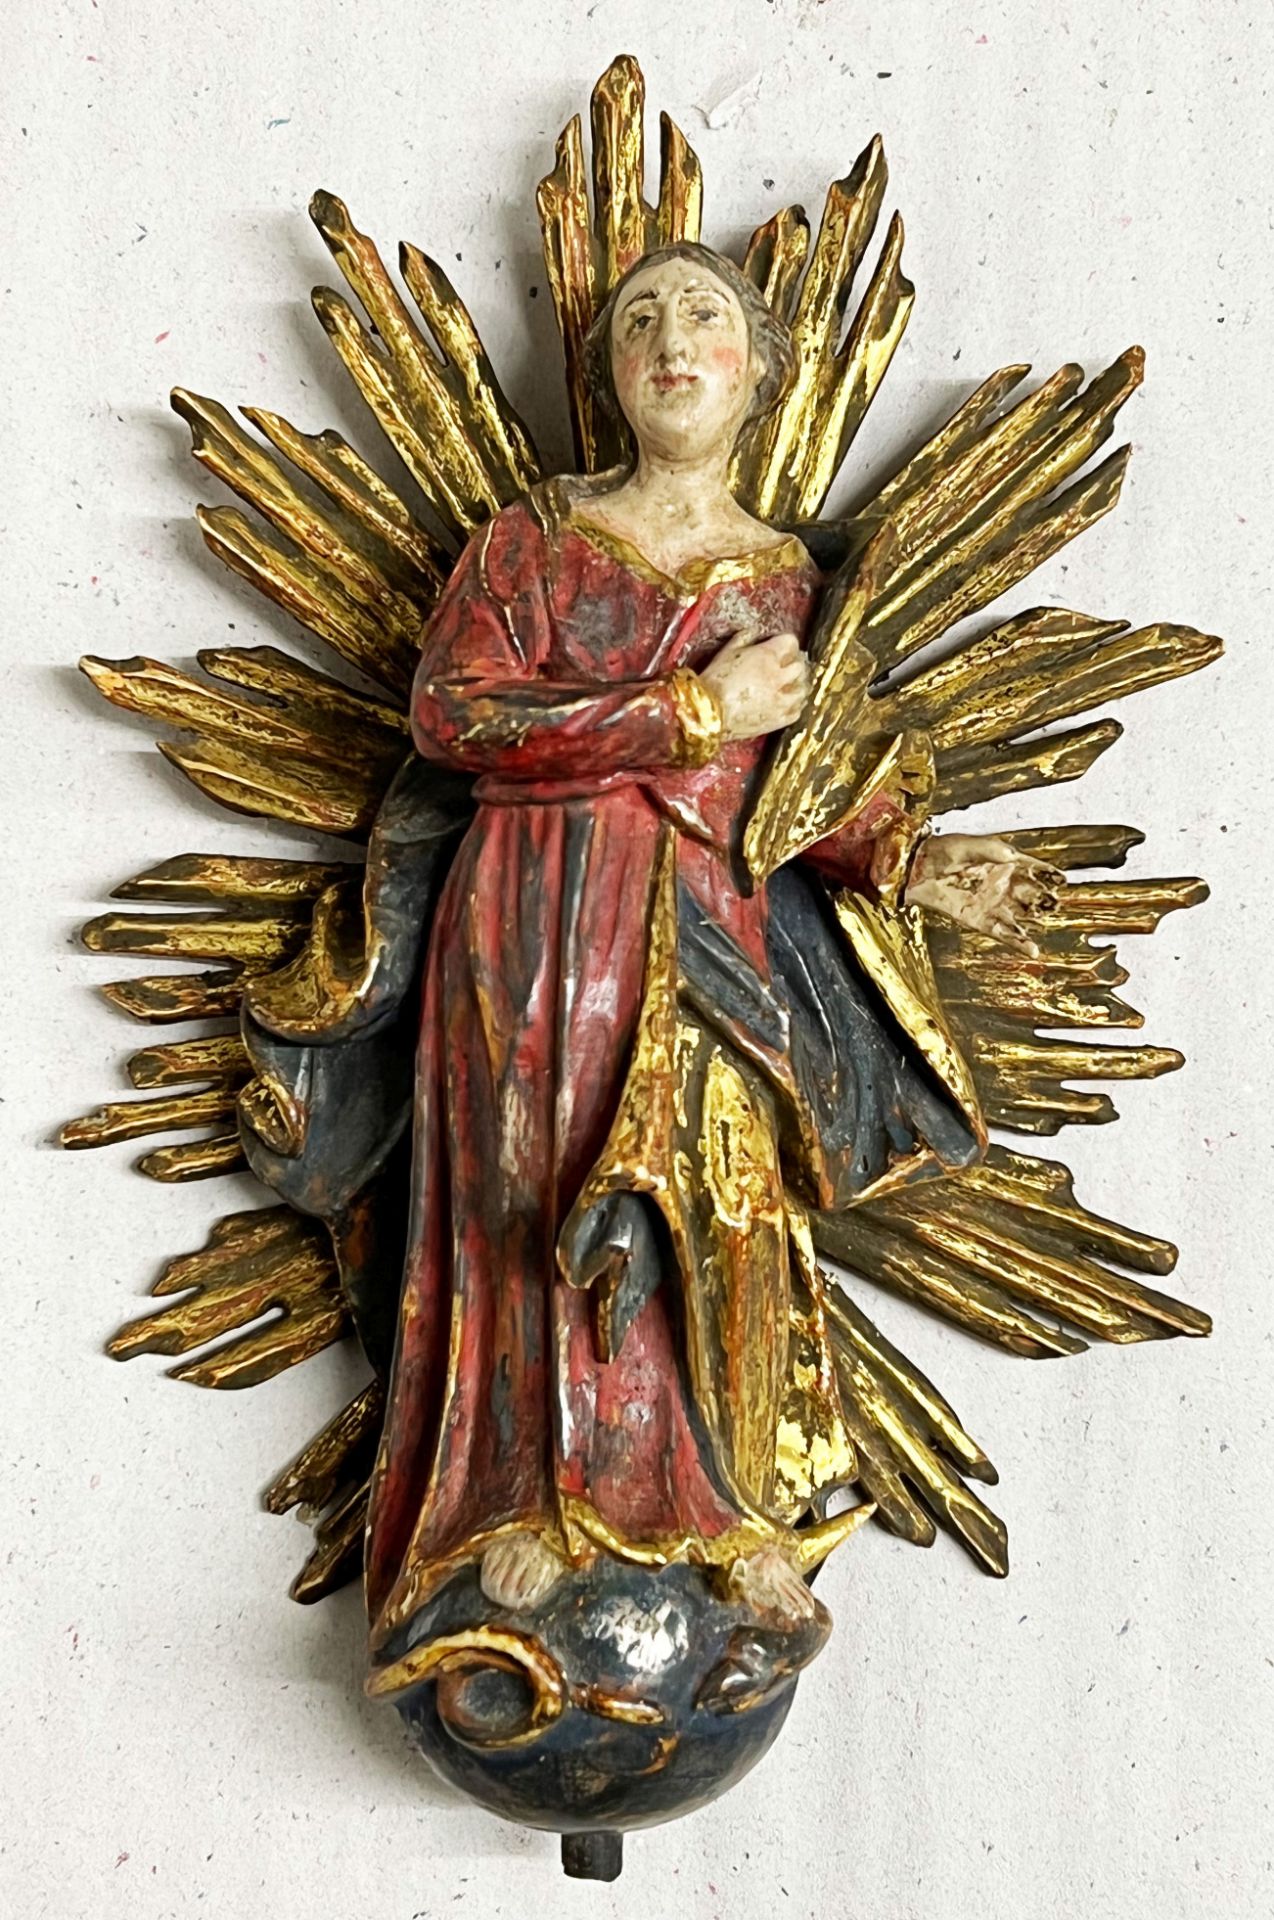 Immaculata/ Virgin Mary. Frühes 19. Jh., Holz, im Strahlenkranz, alte Fassung, Altersspuren, H. 21